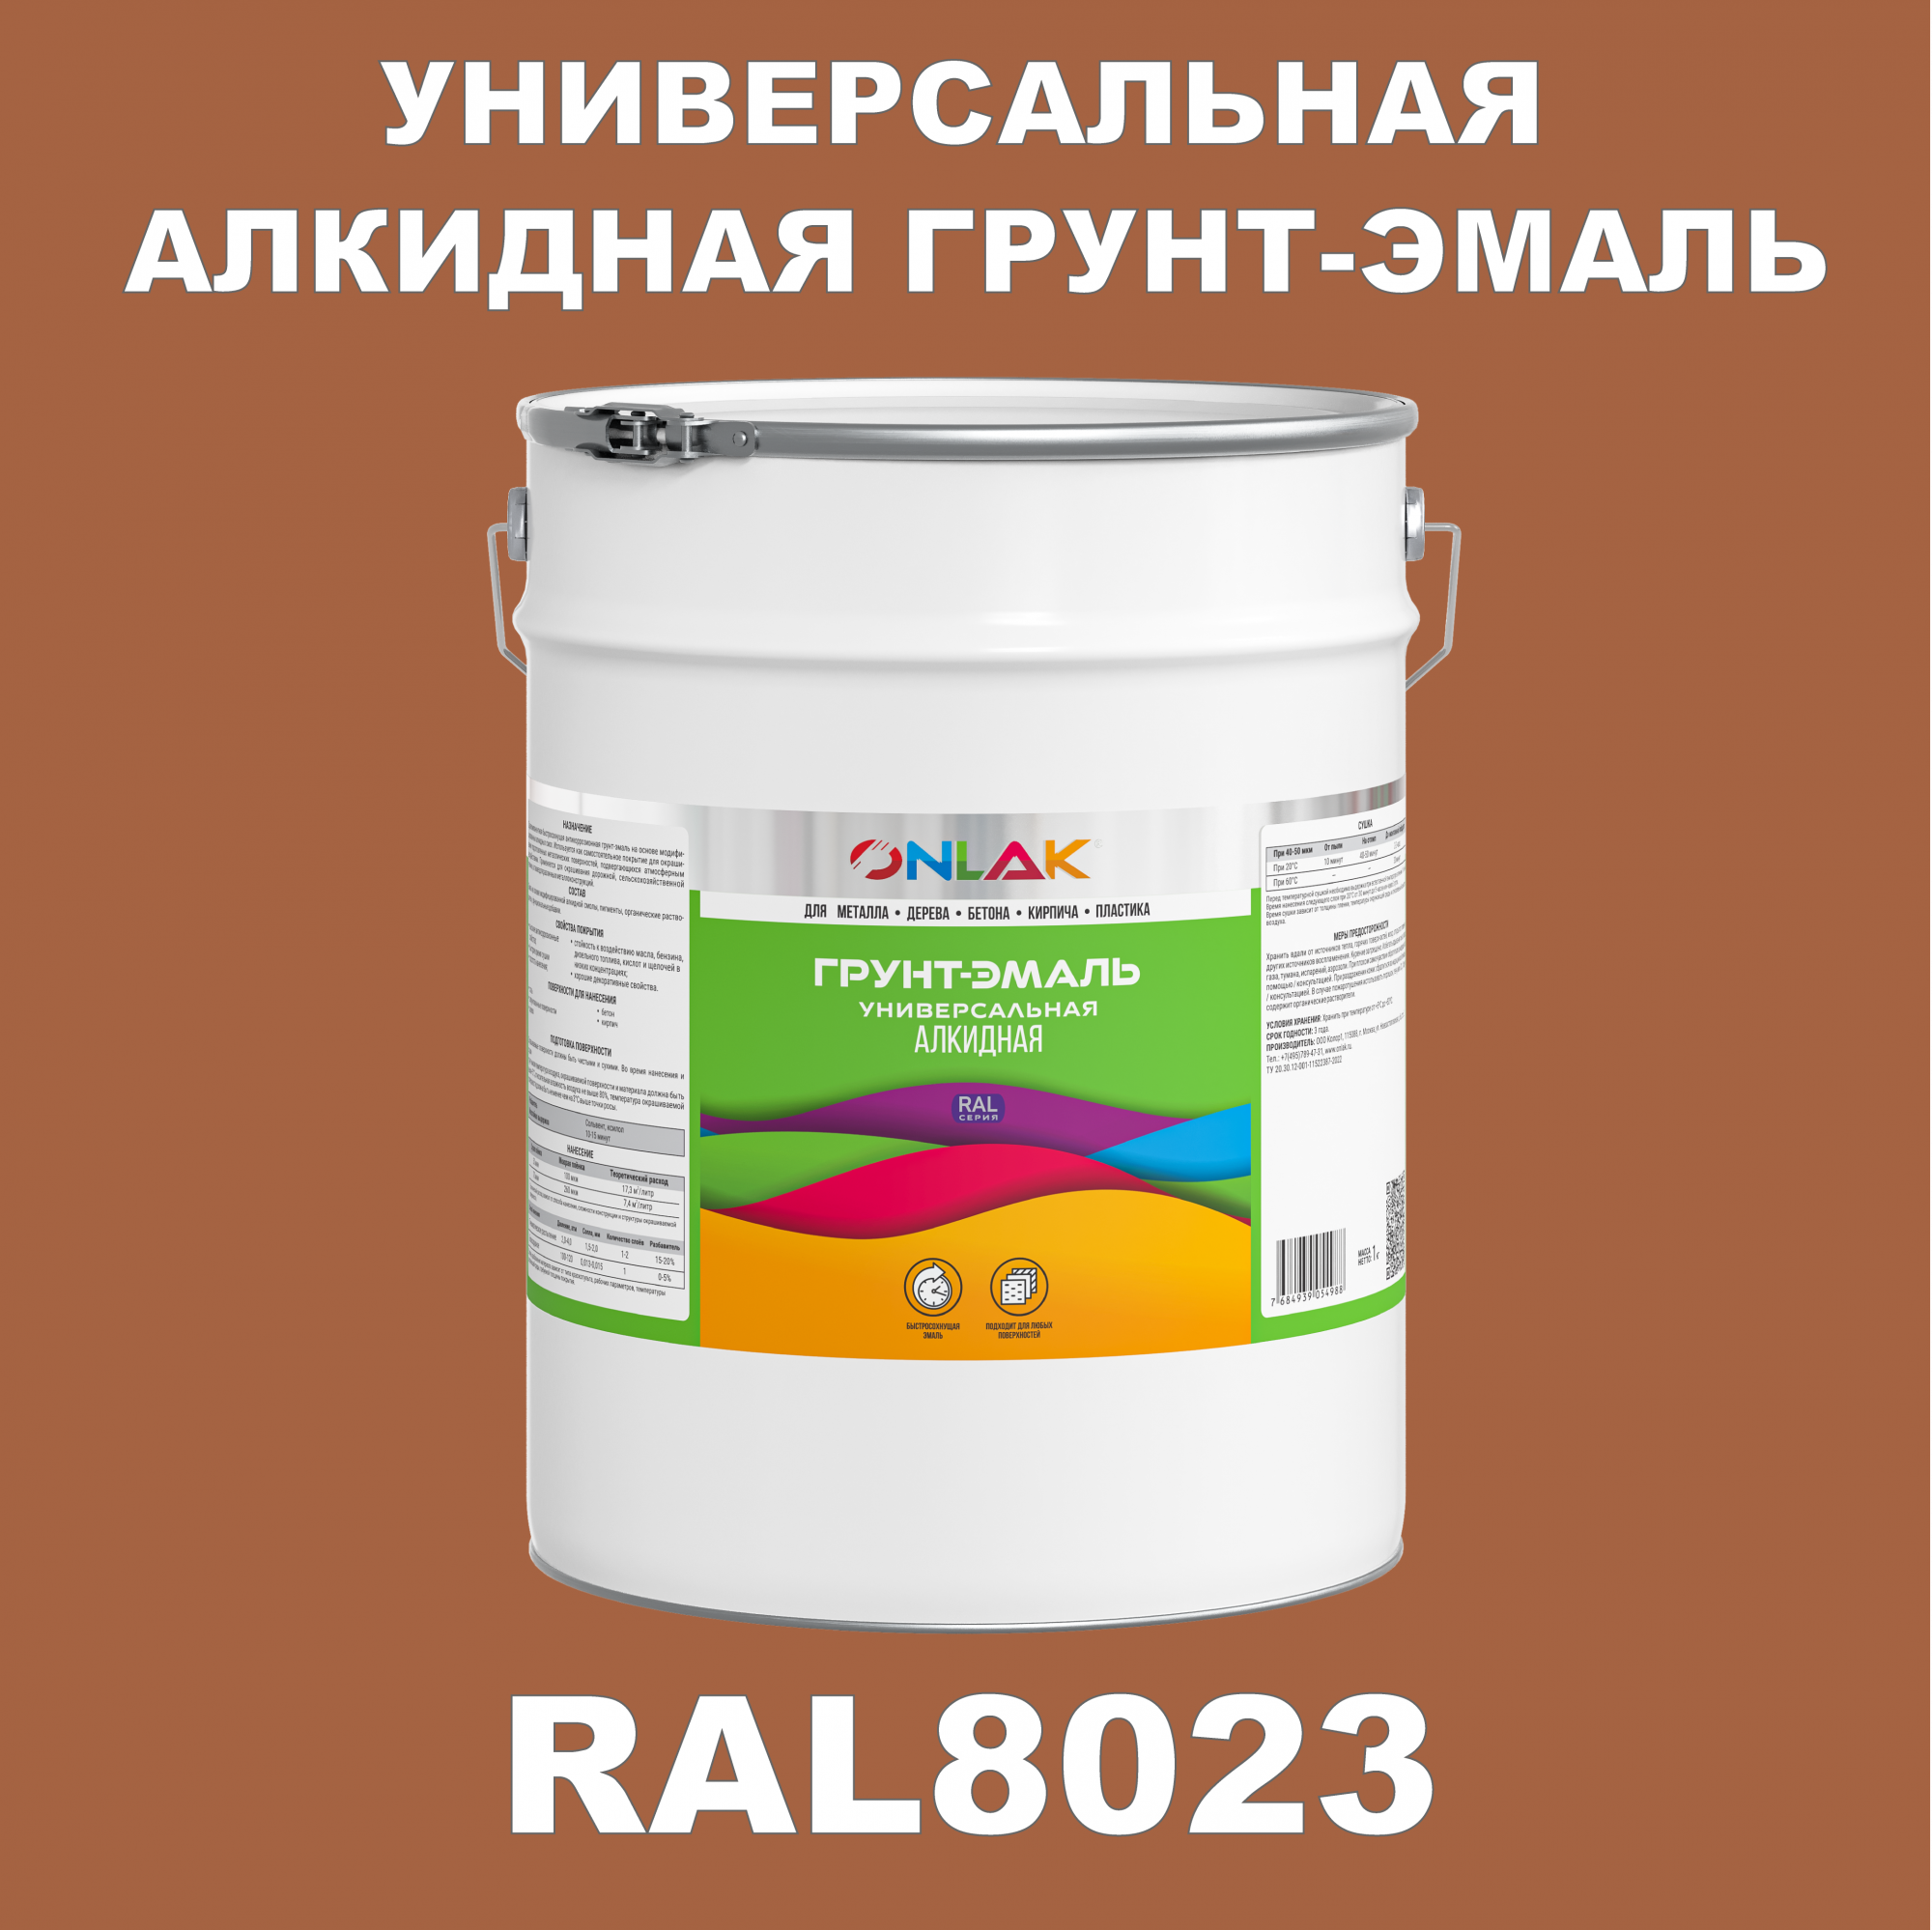 Грунт-эмаль ONLAK 1К RAL8023 антикоррозионная алкидная по металлу по ржавчине 20 кг грунт эмаль престиж по ржавчине алкидная зеленая 1 9 кг